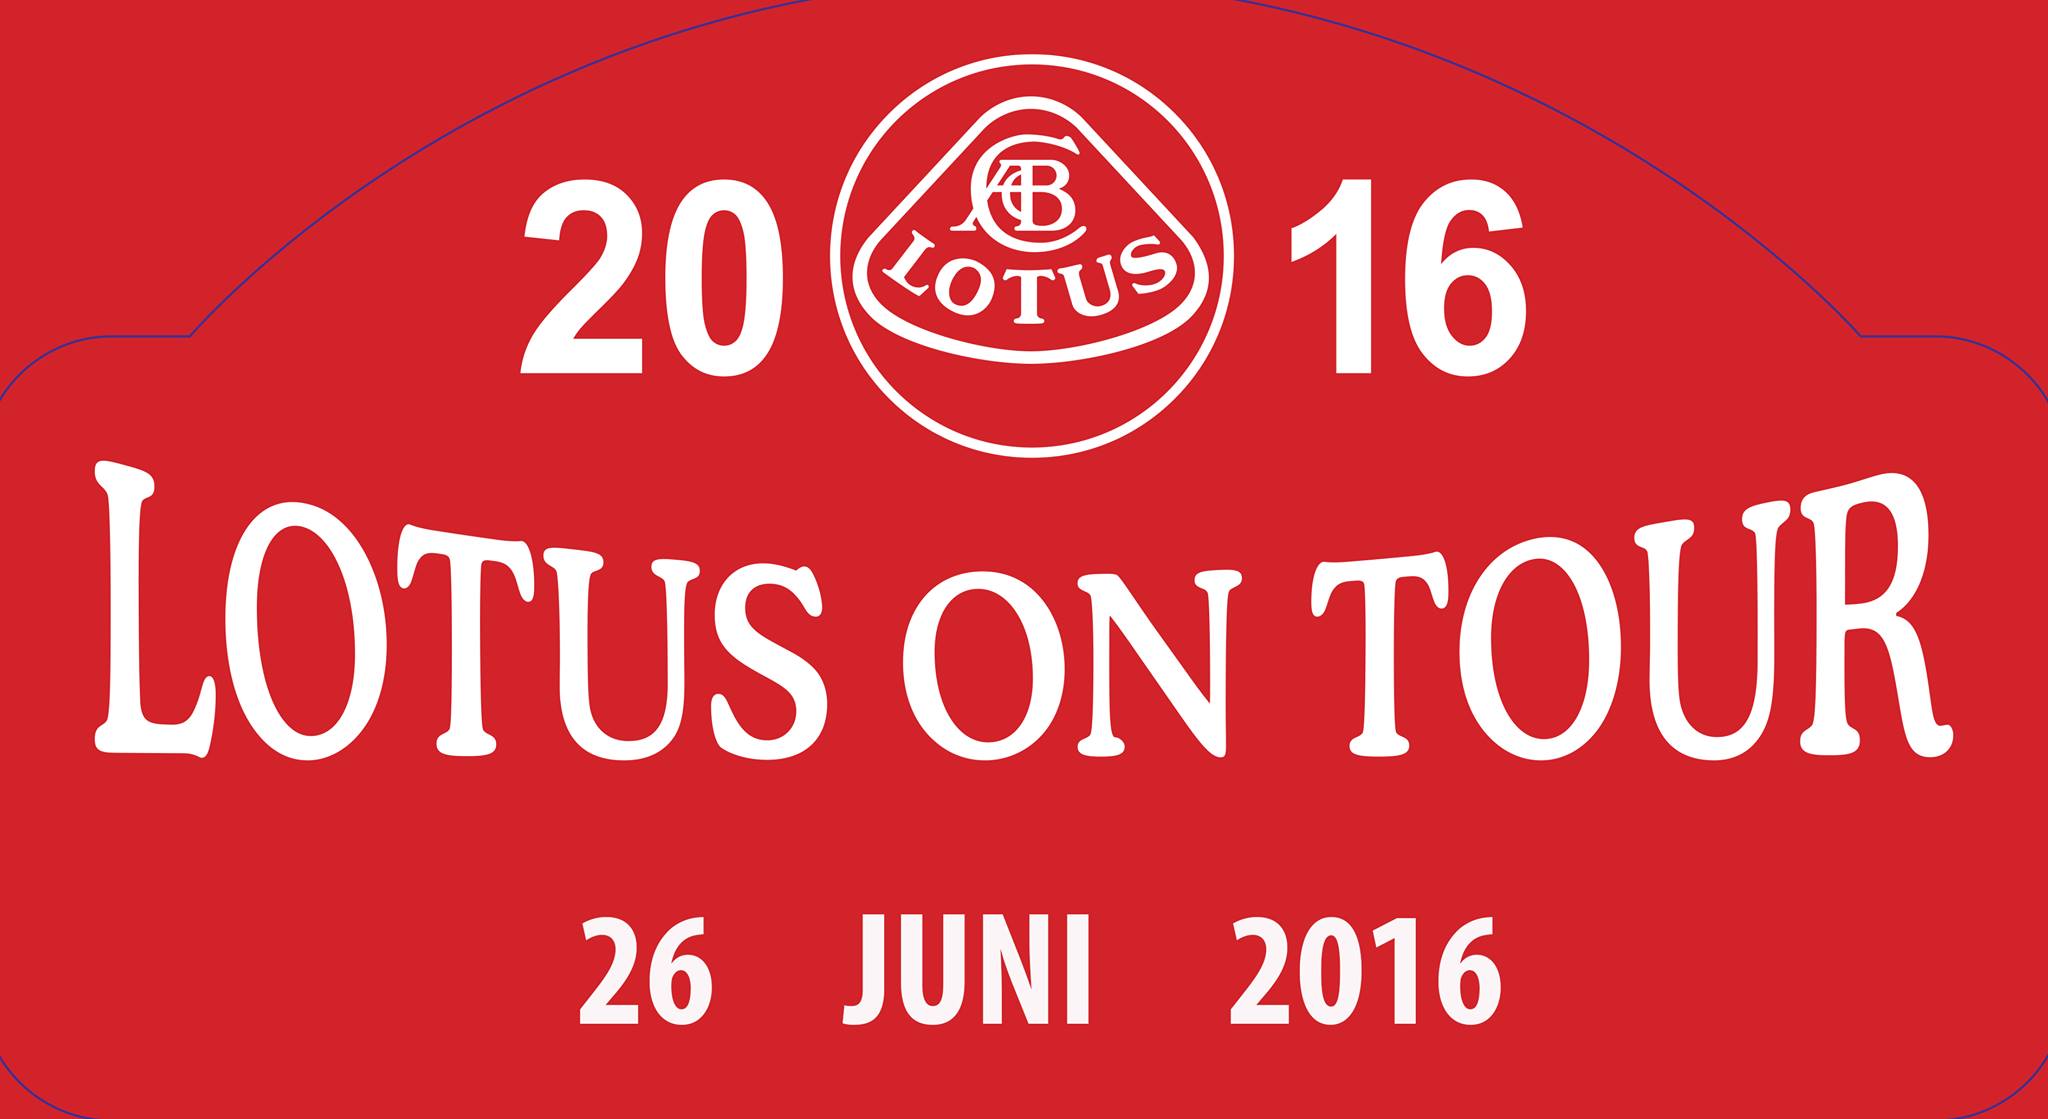 Logo Lotus on Tour 2016.jpg